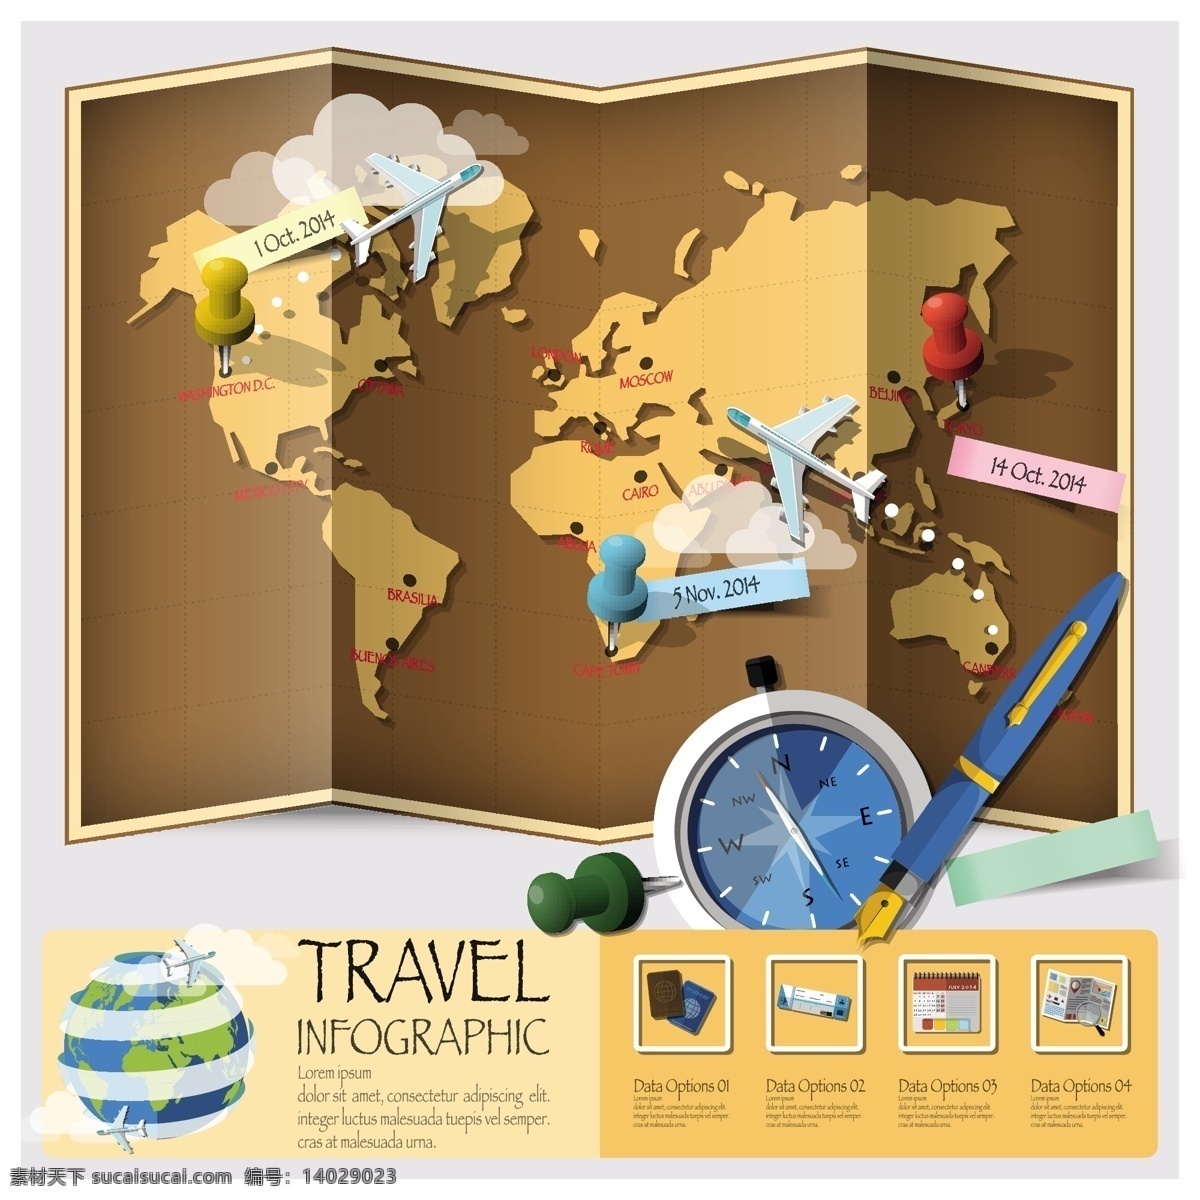 世界 旅游 信息 图形 矢量